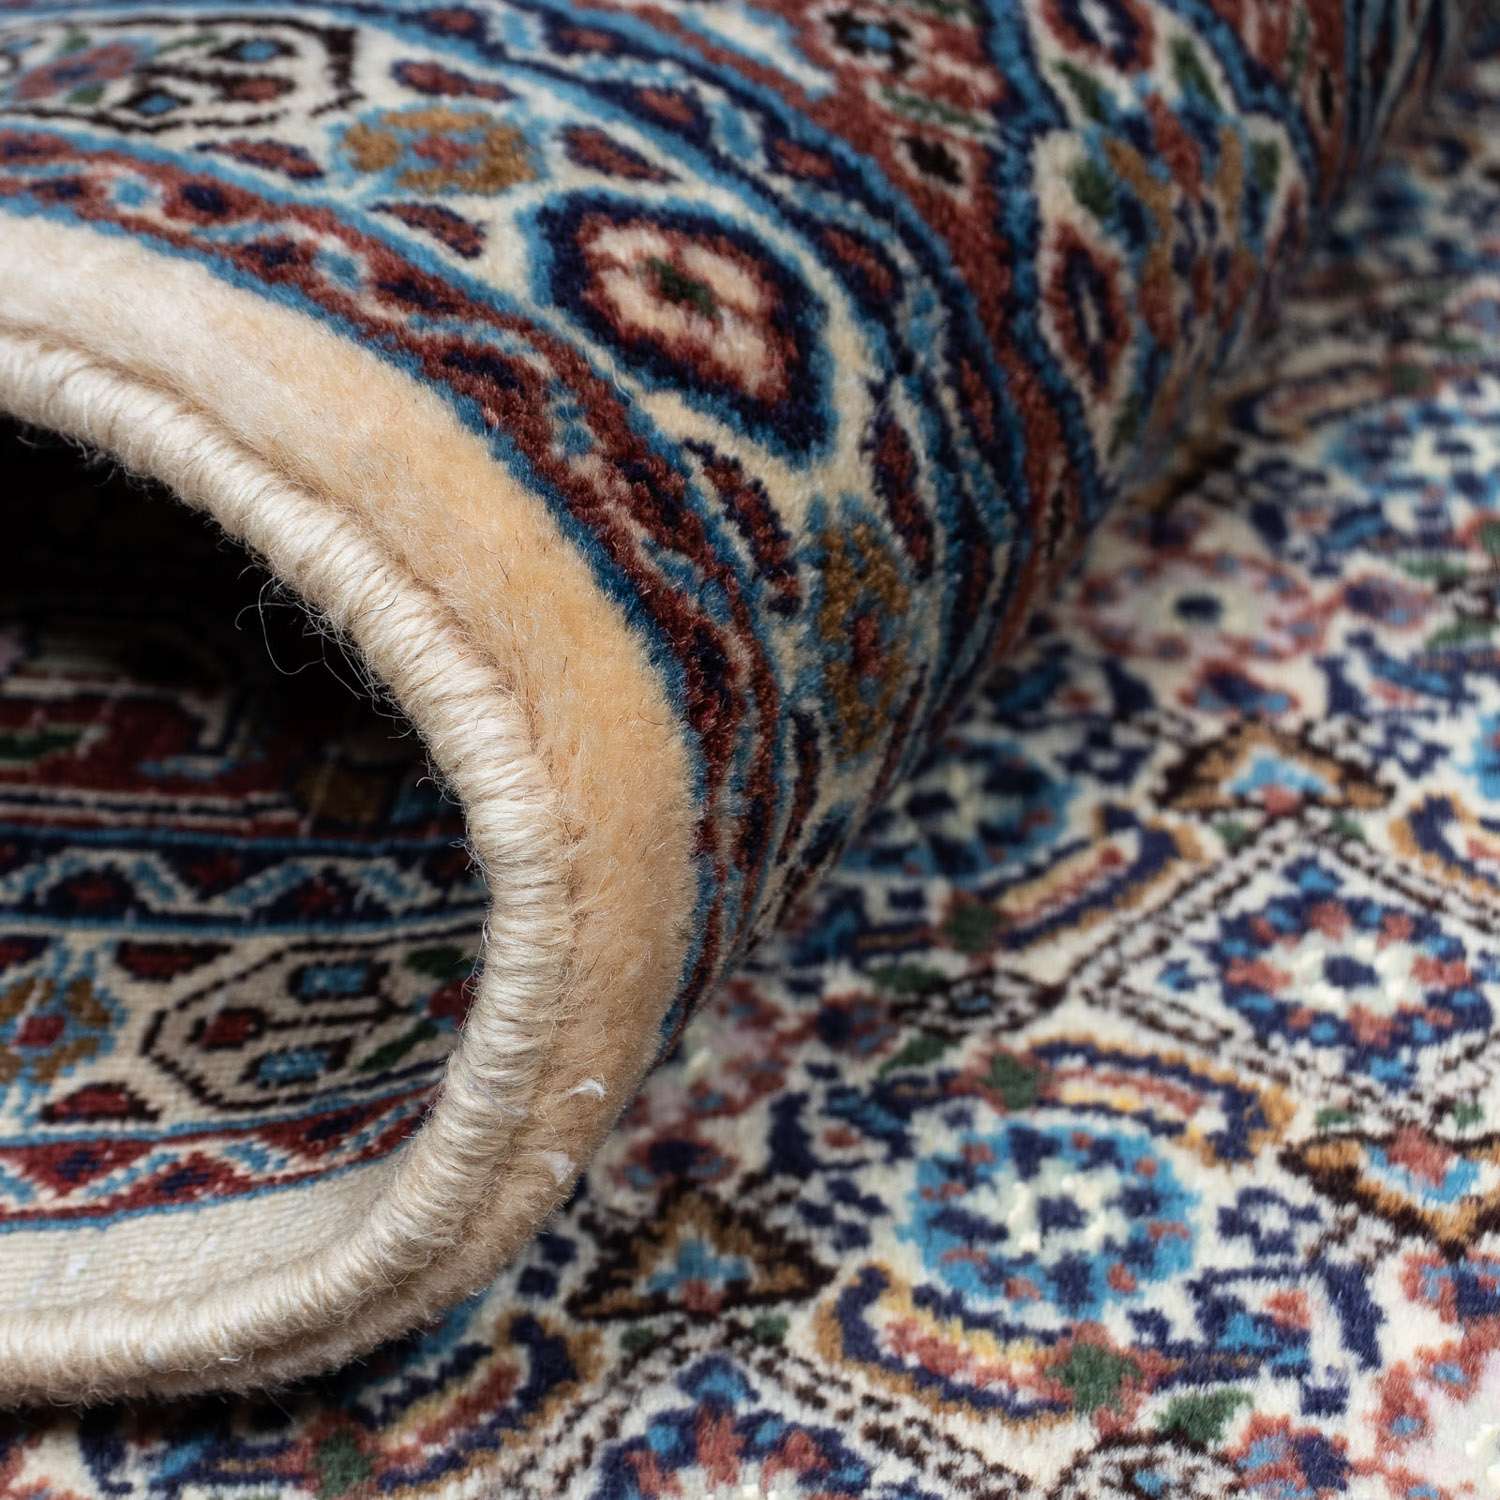 Perský koberec - Klasický - 237 x 172 cm - béžová